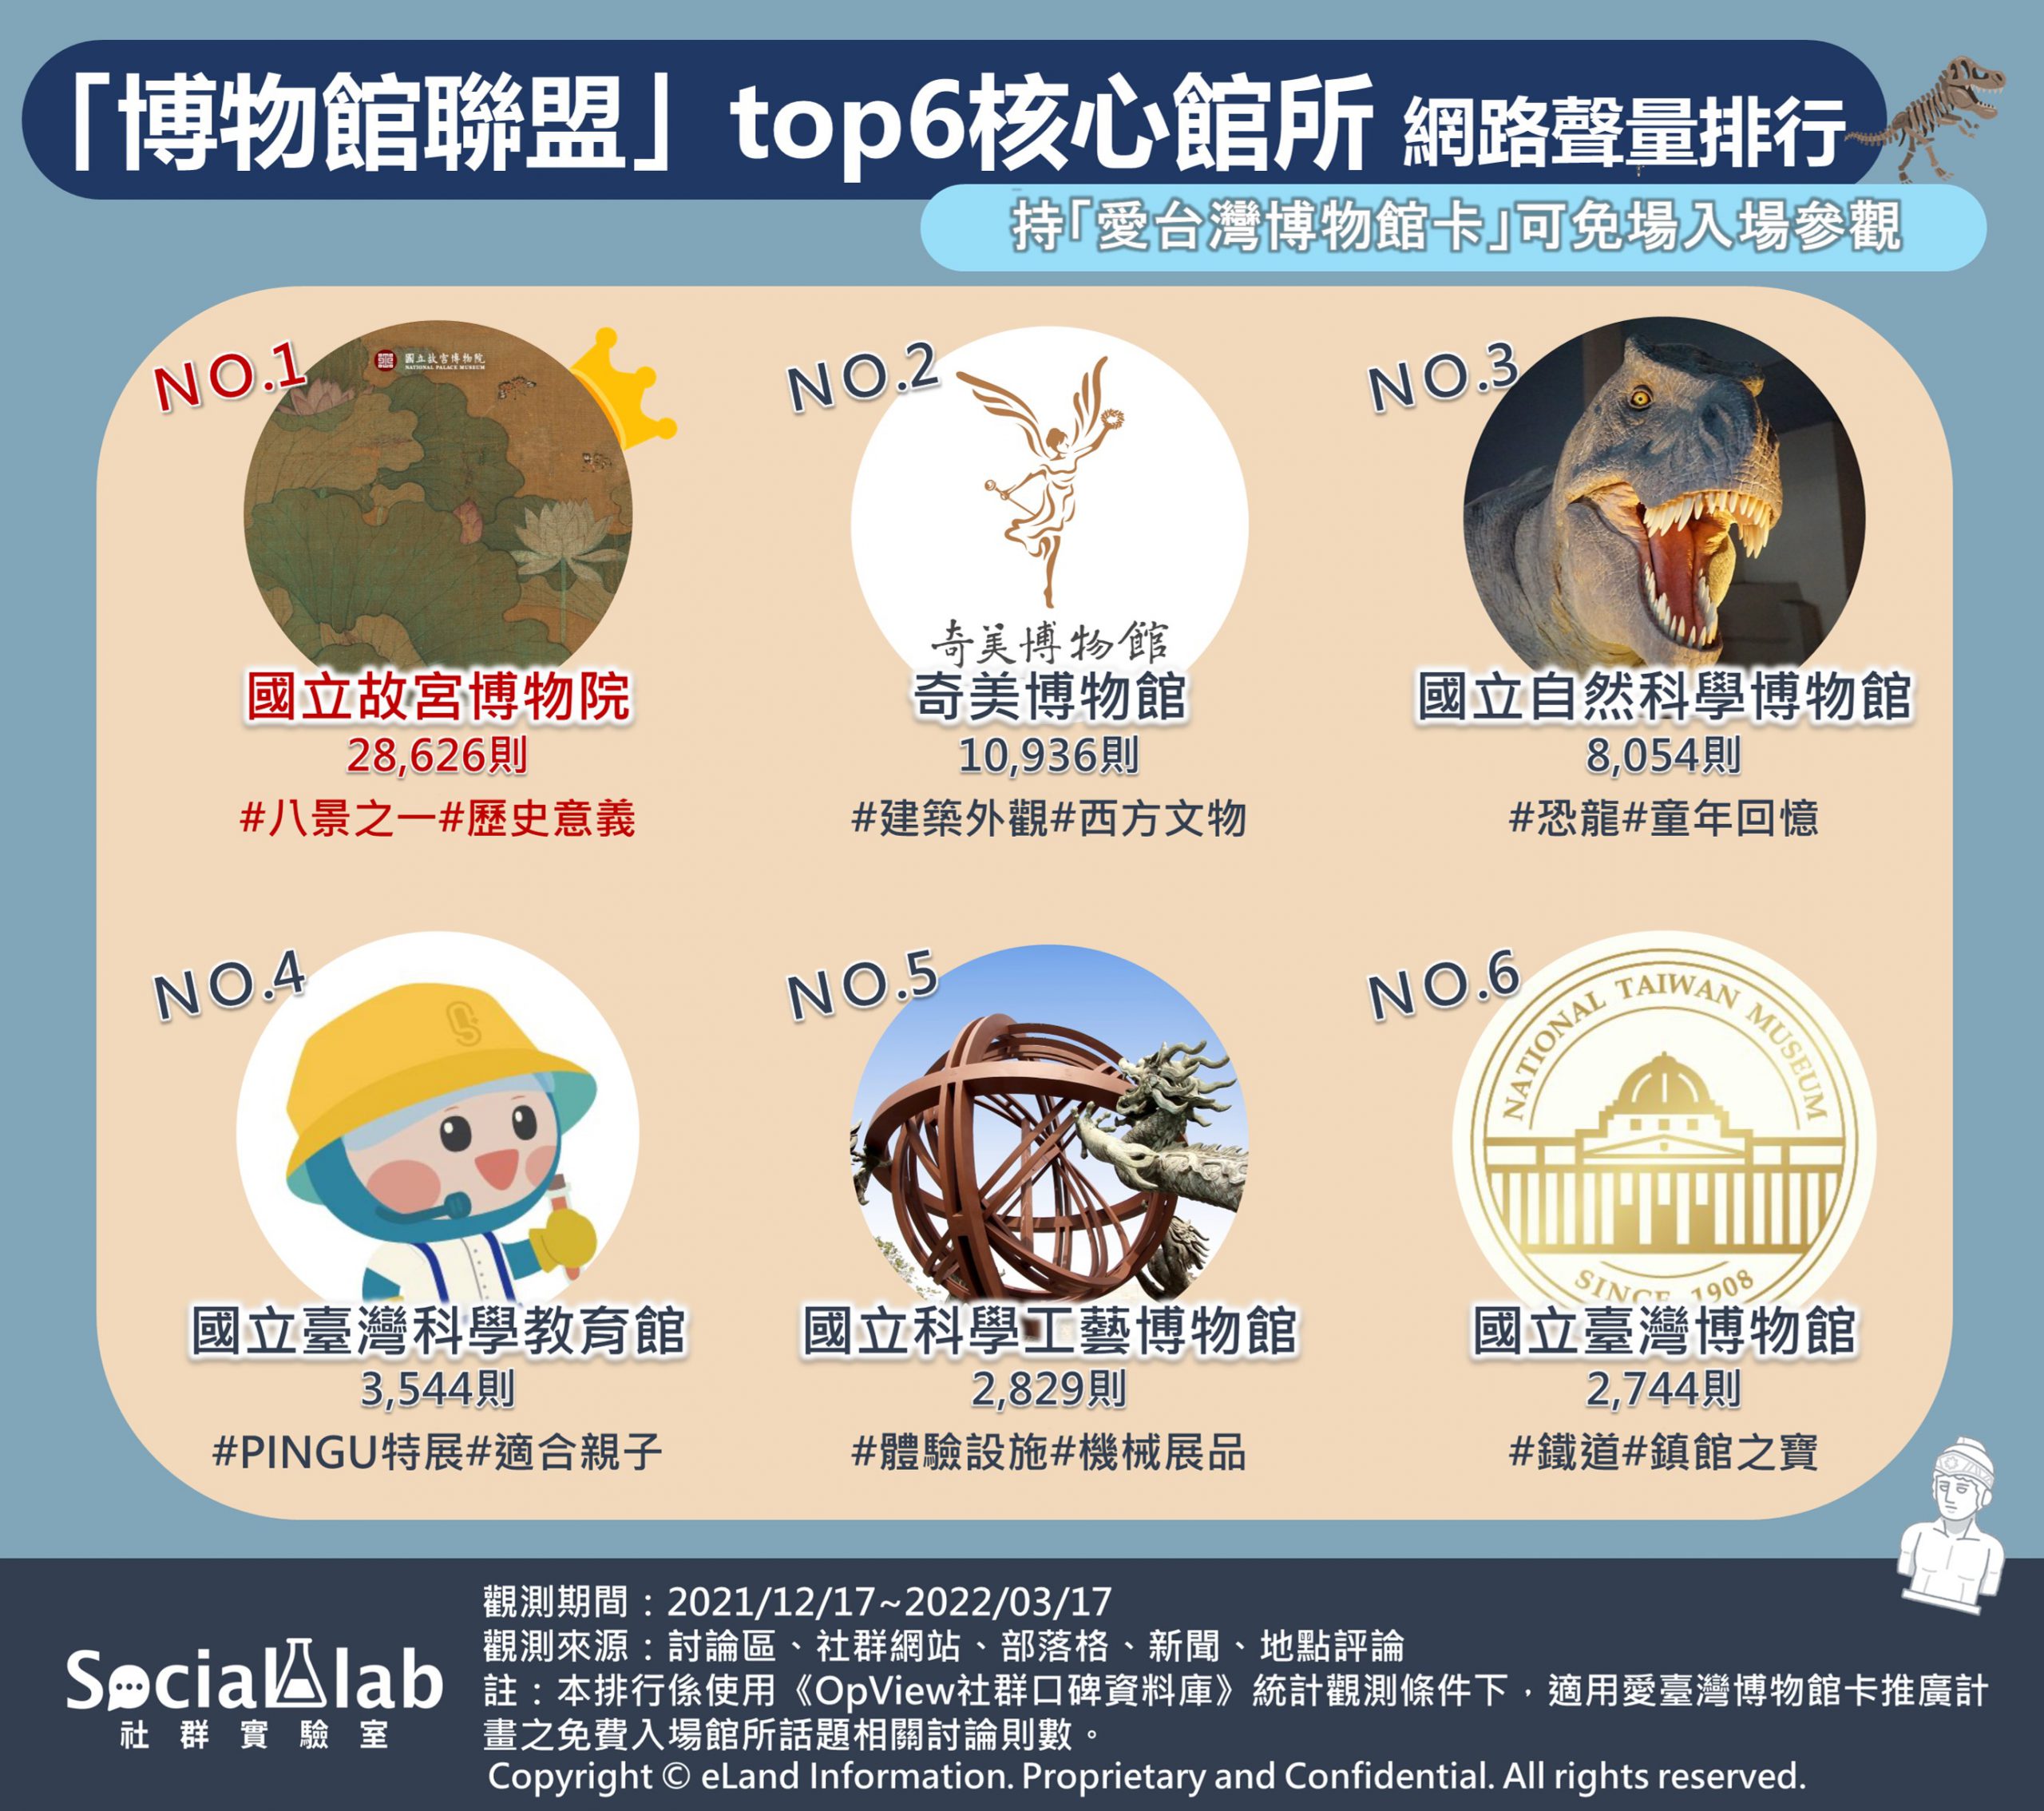 「博物館聯盟」top6核心館所 網路聲量排行